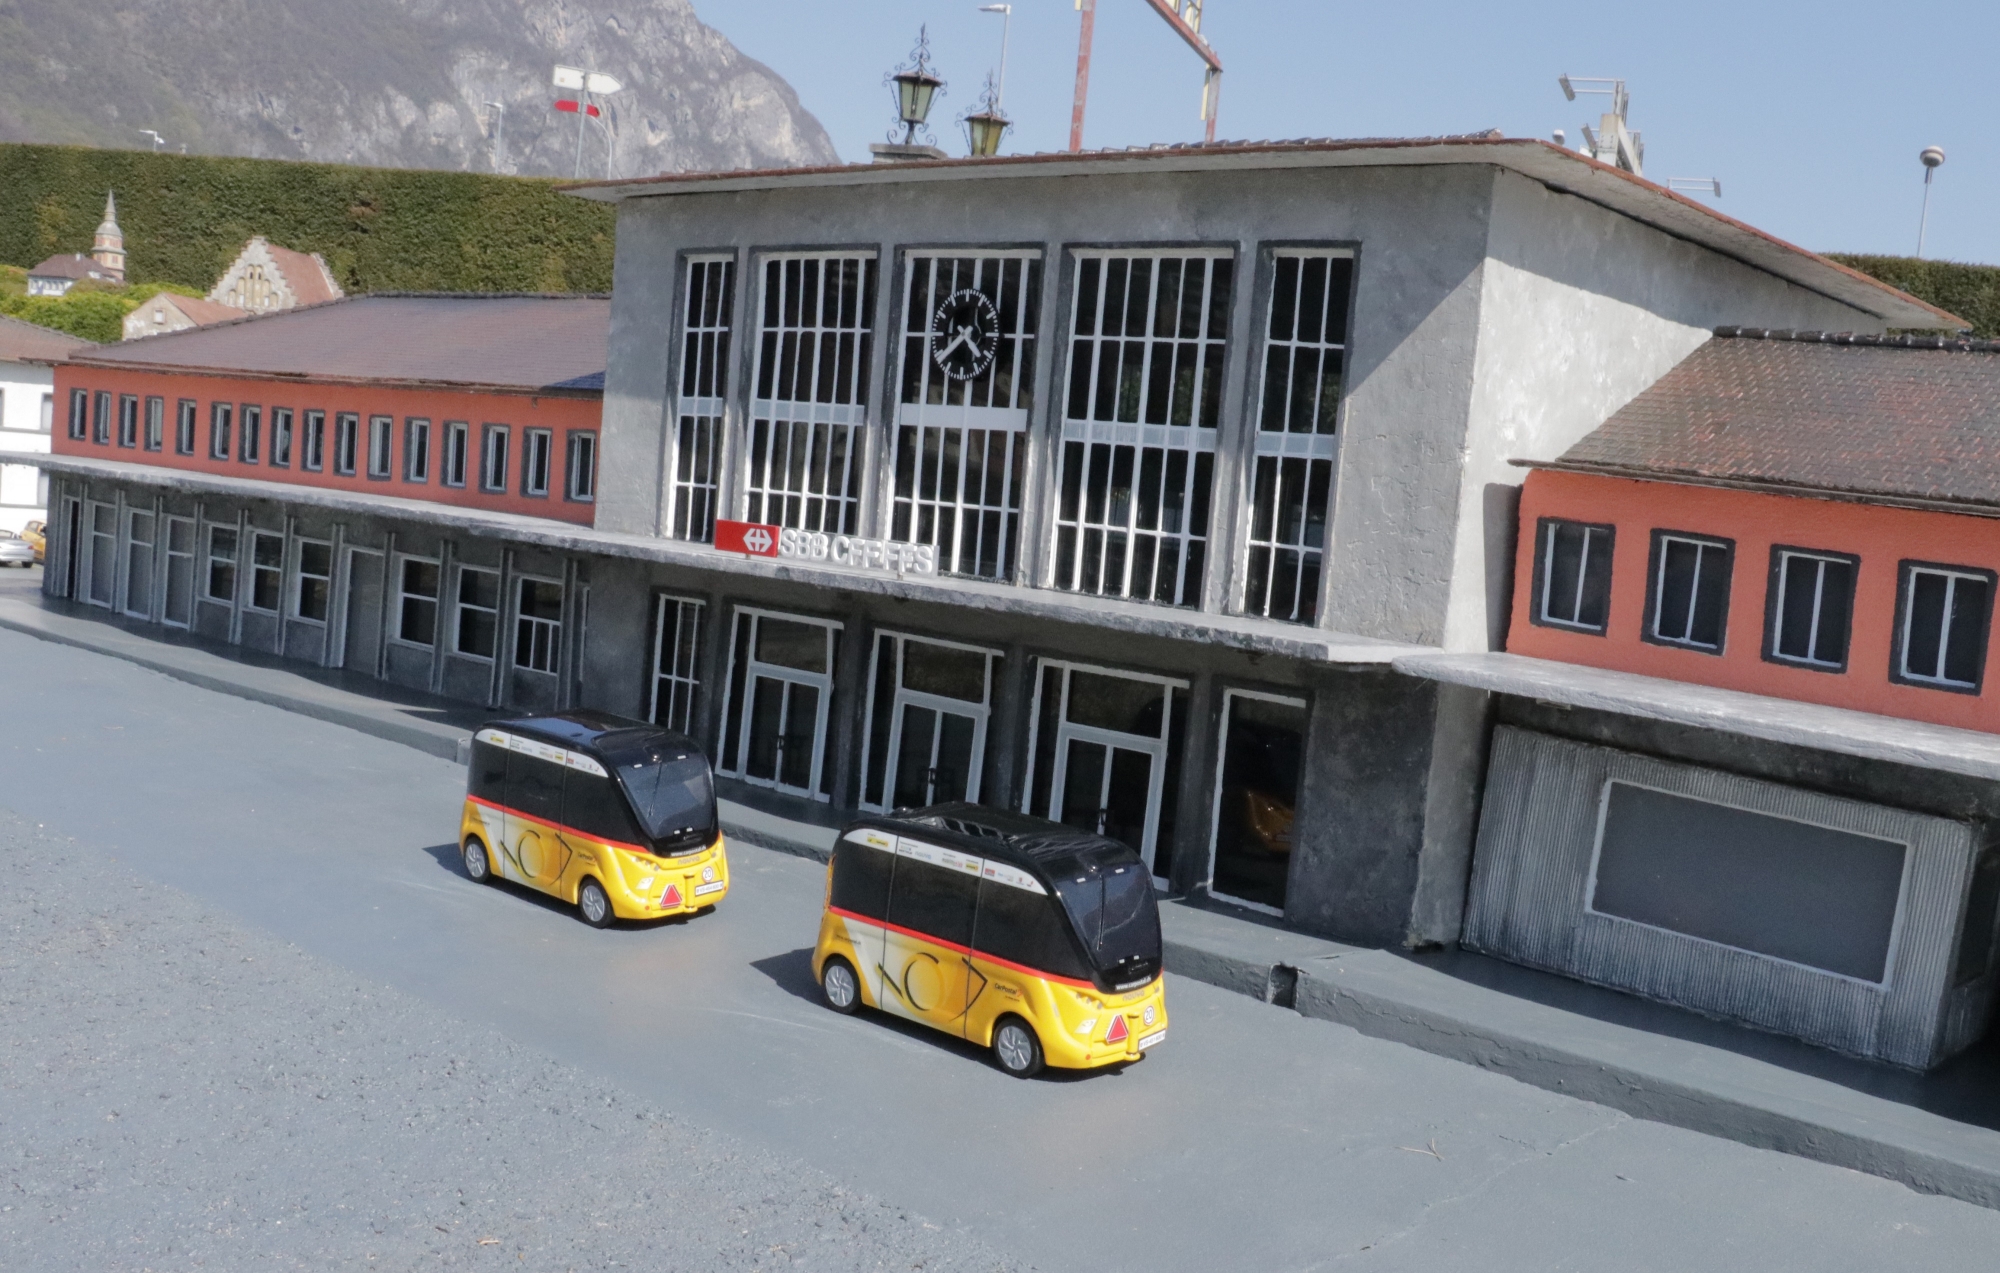 Les deux petites navettes autonomes devant le modèle de la gare de Sion à Swissminiatur.